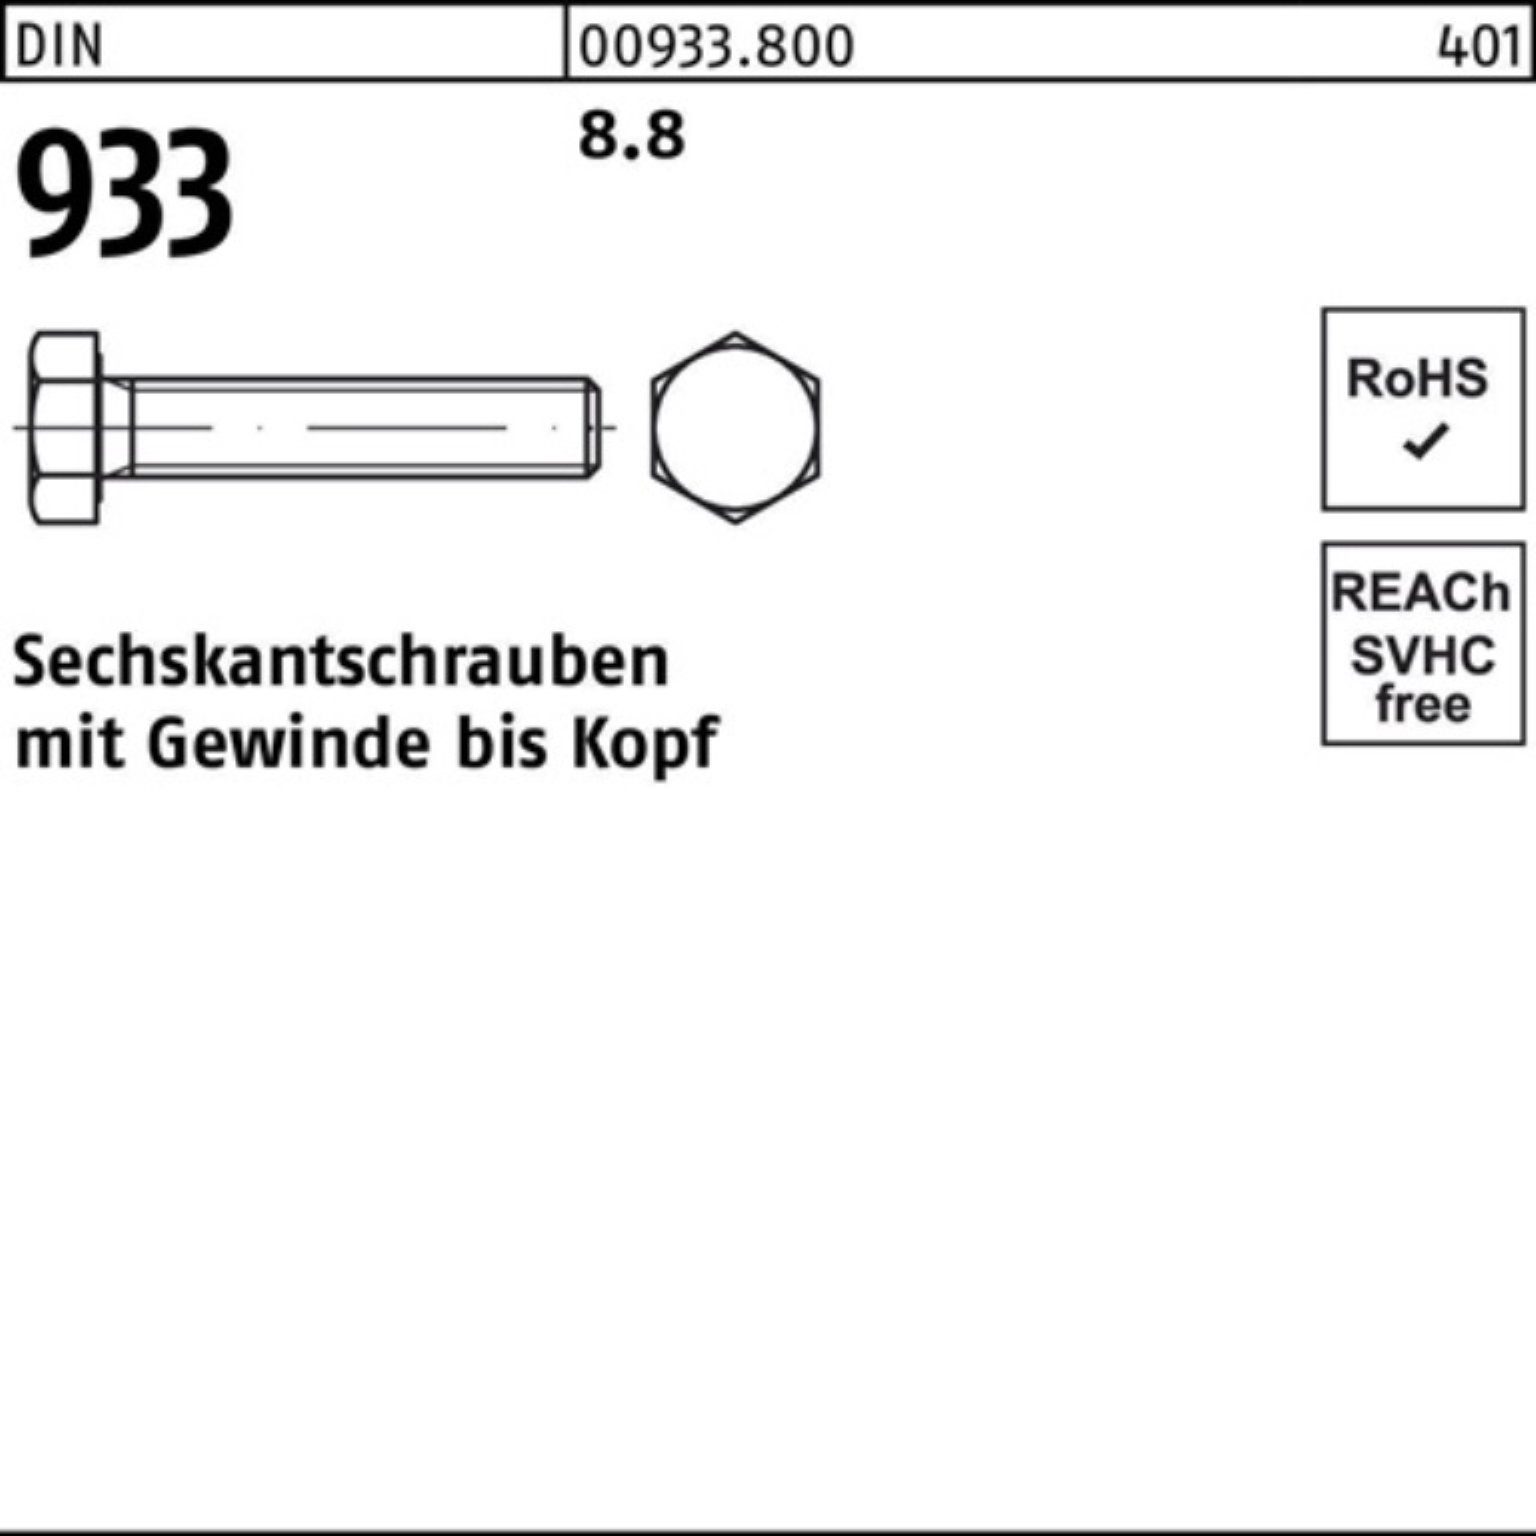 Reyher Sechskantschraube 500er Pack VG 933 933 M4x Sechskantschraube 12 DIN 500 DIN 8.8 Stück